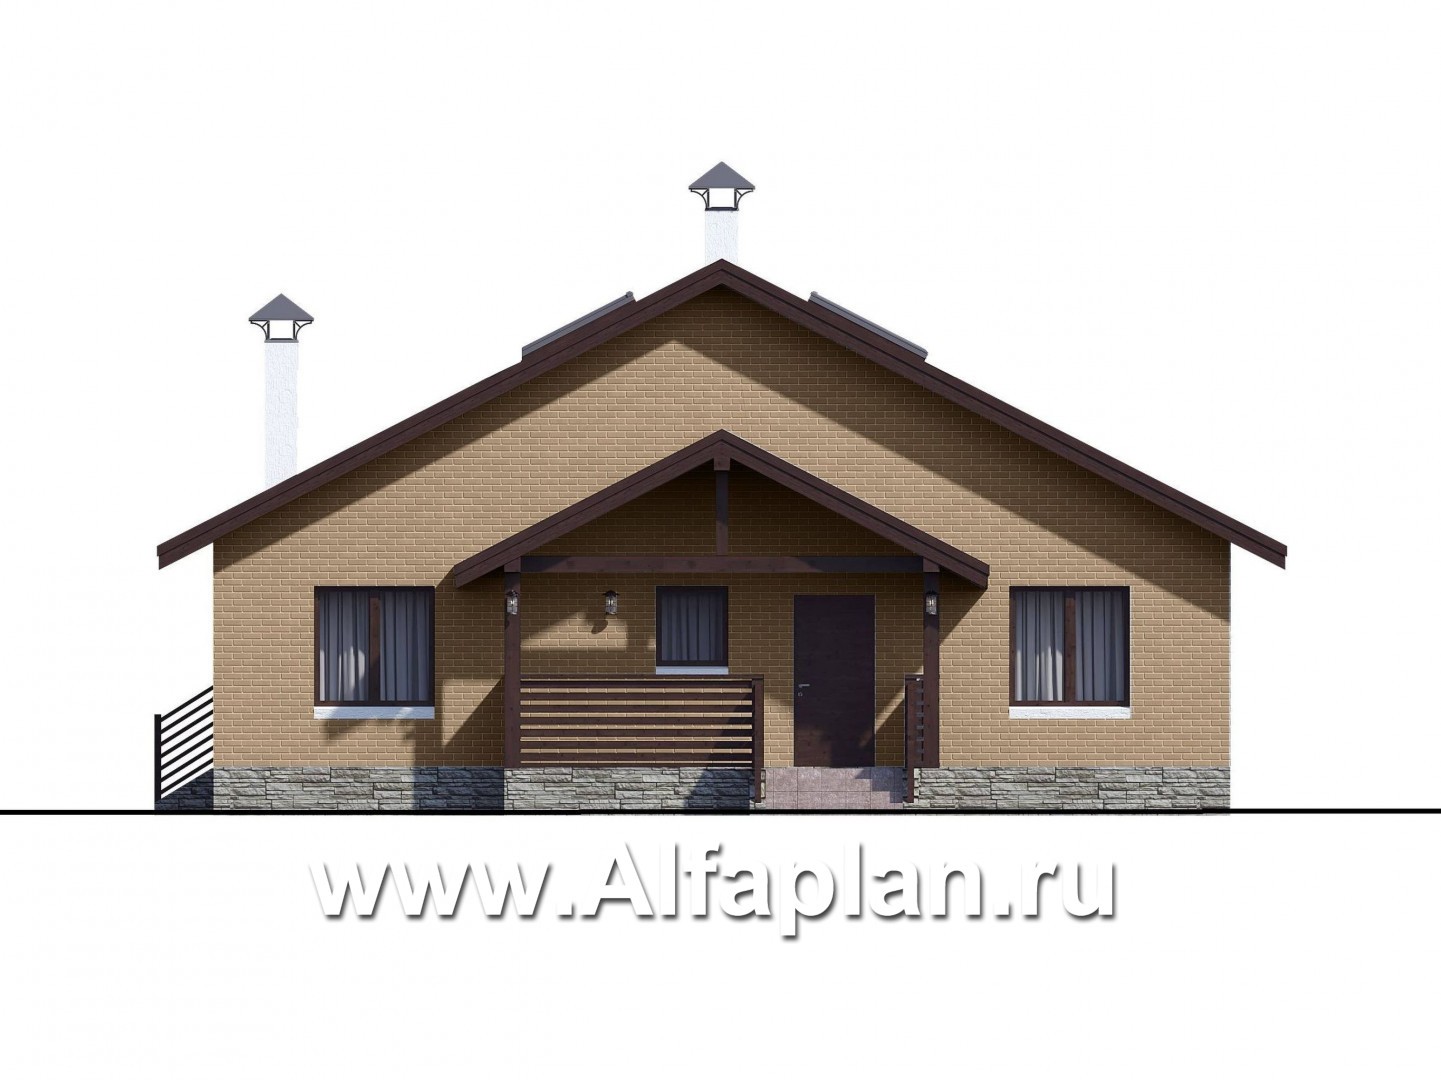 Проекты домов Альфаплан - «Моризо» - проект дома с мансардой, планировка с двусветной гостиной и 2 спальни на 1 эт, шале с двускатной крышей - изображение фасада №4